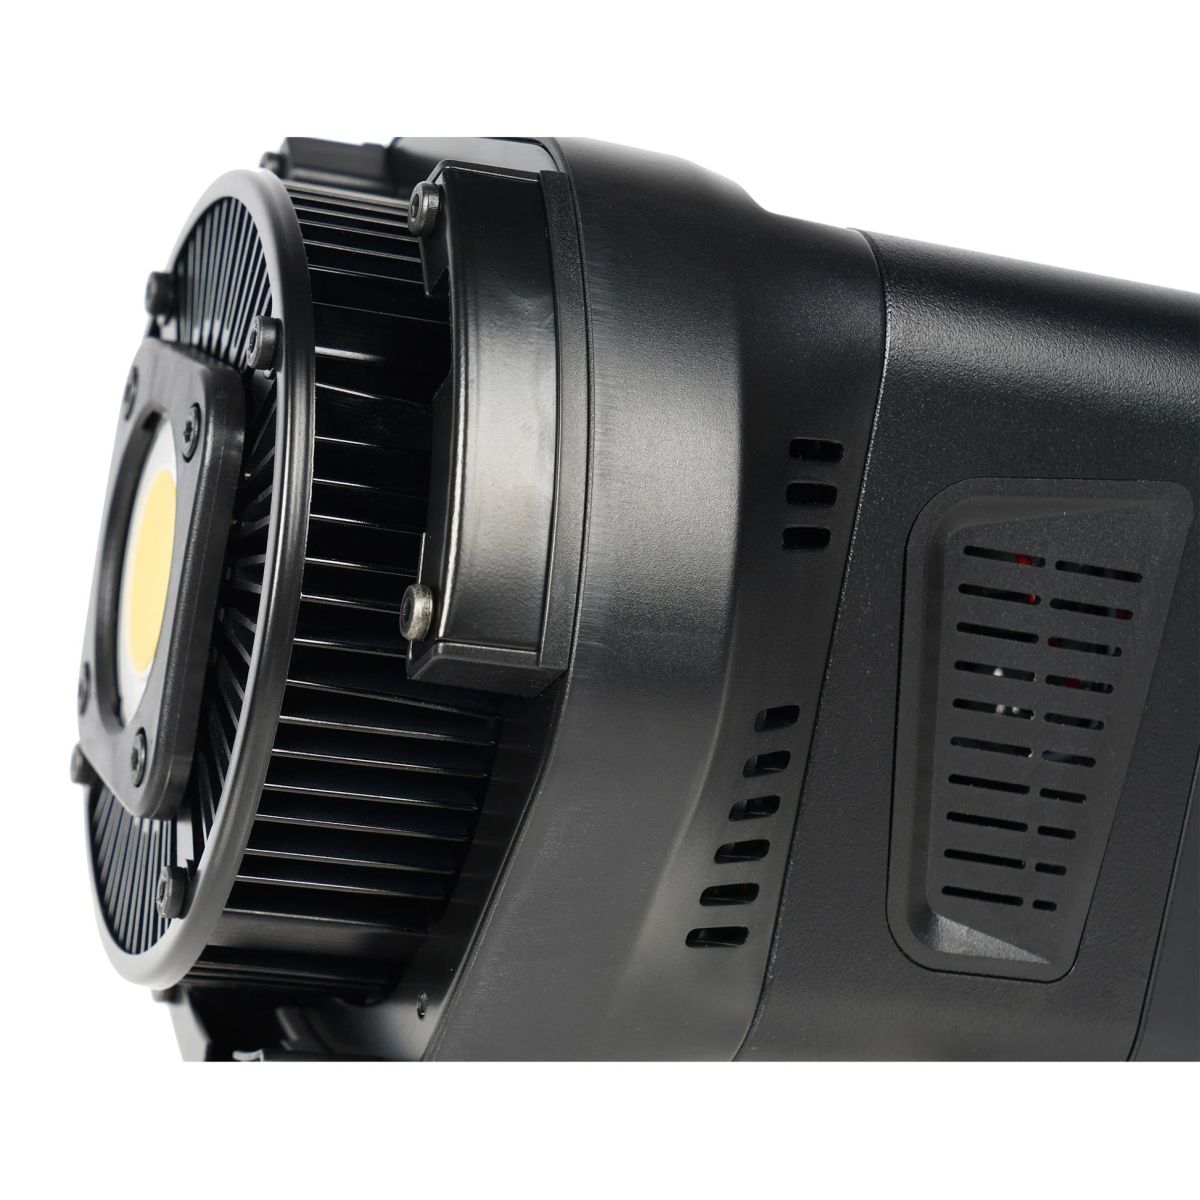 Sirui C60R LED-Dauerlicht RGB-360m-Color 60W - superleise 20dB - Foto- + Videoleuchte